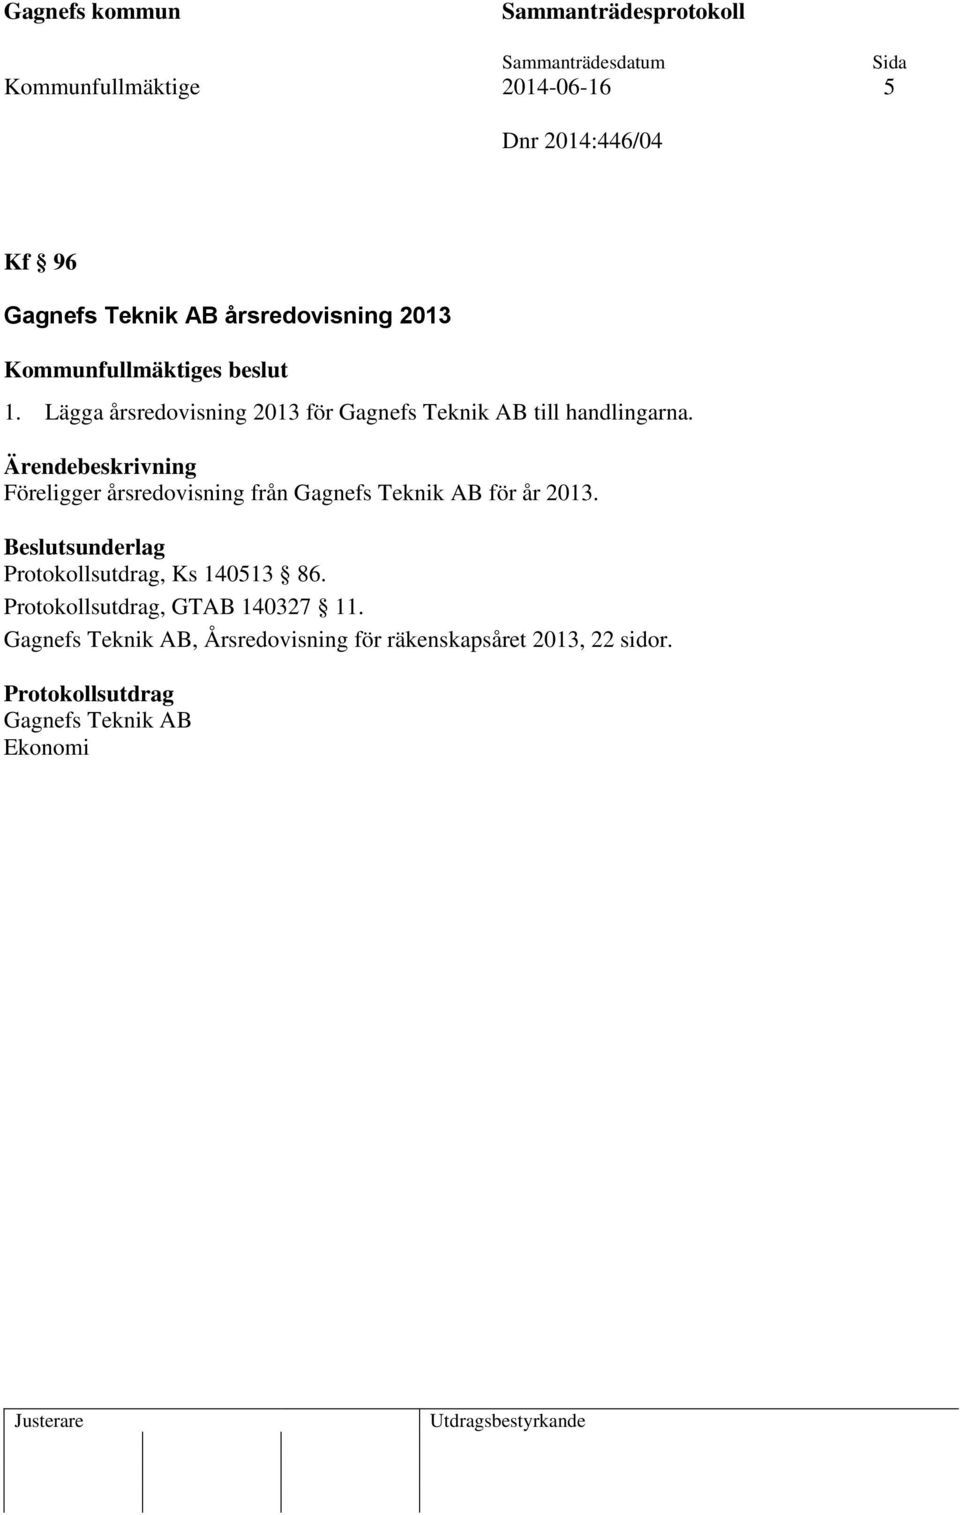 Föreligger årsredovisning från Gagnefs Teknik AB för år 2013., Ks 140513 86.